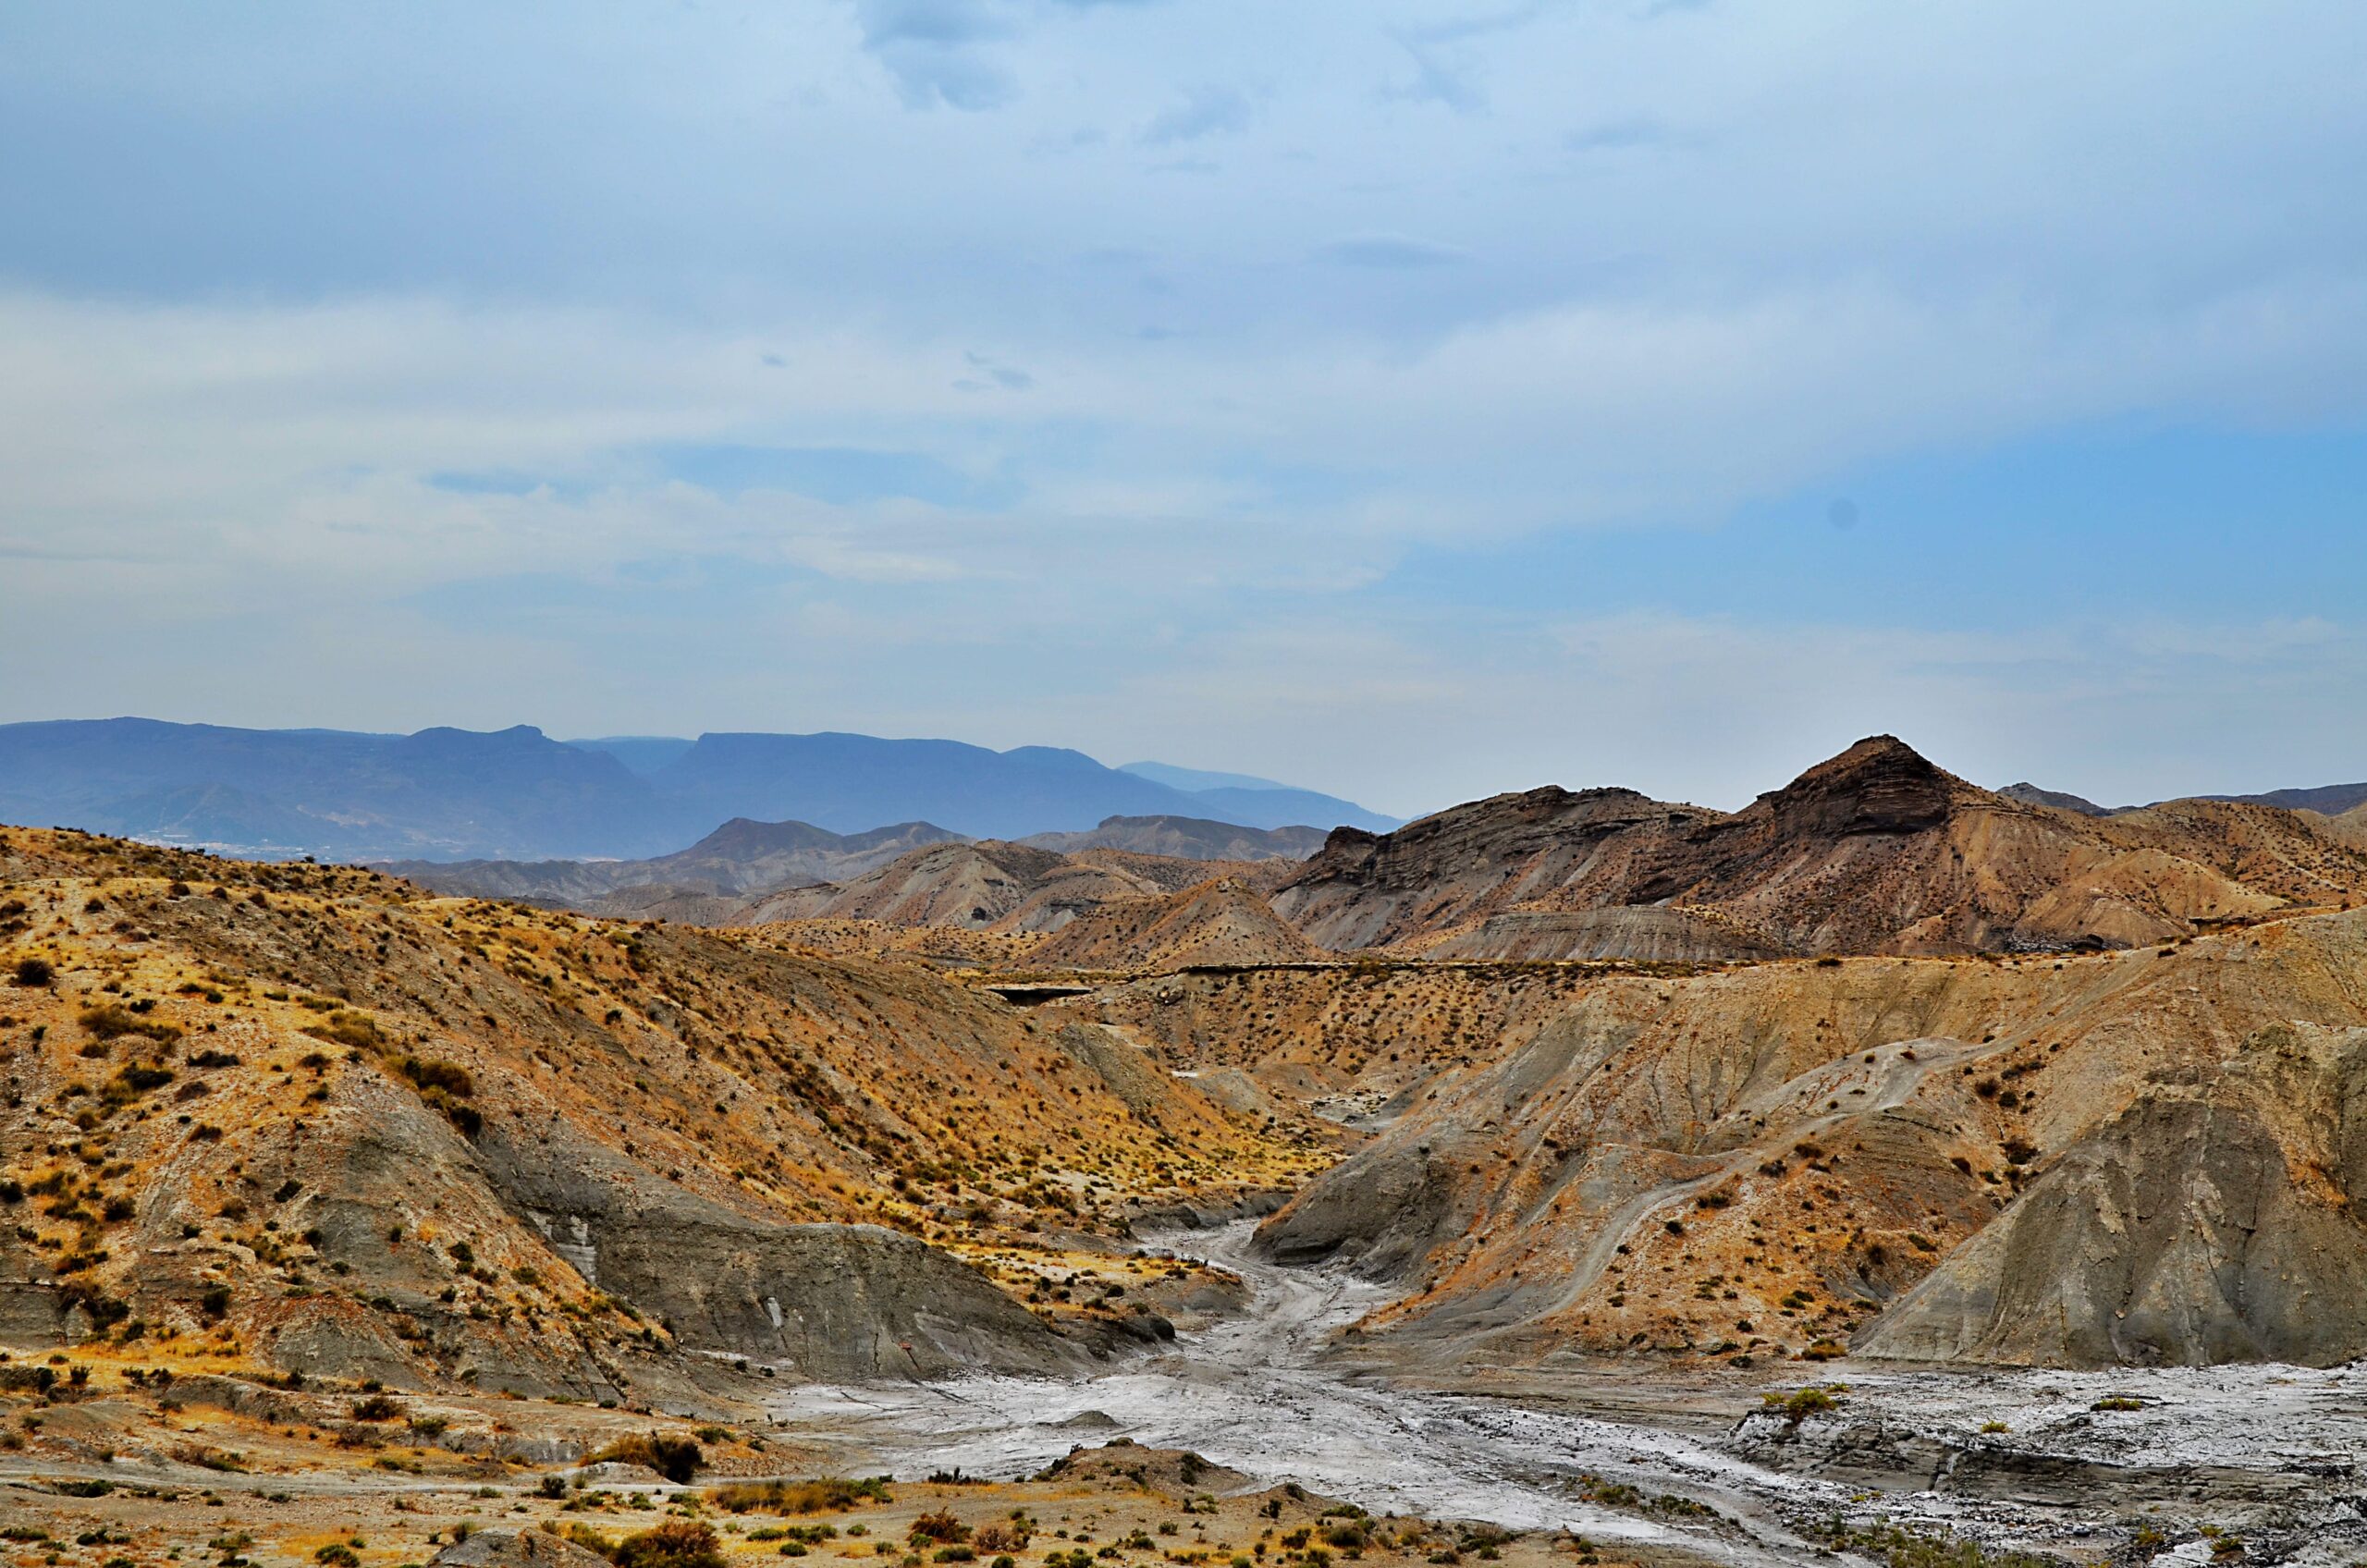 Paisaje del desierto de las Tabernas, con un camino ideal para rutas en bici por el desierto.